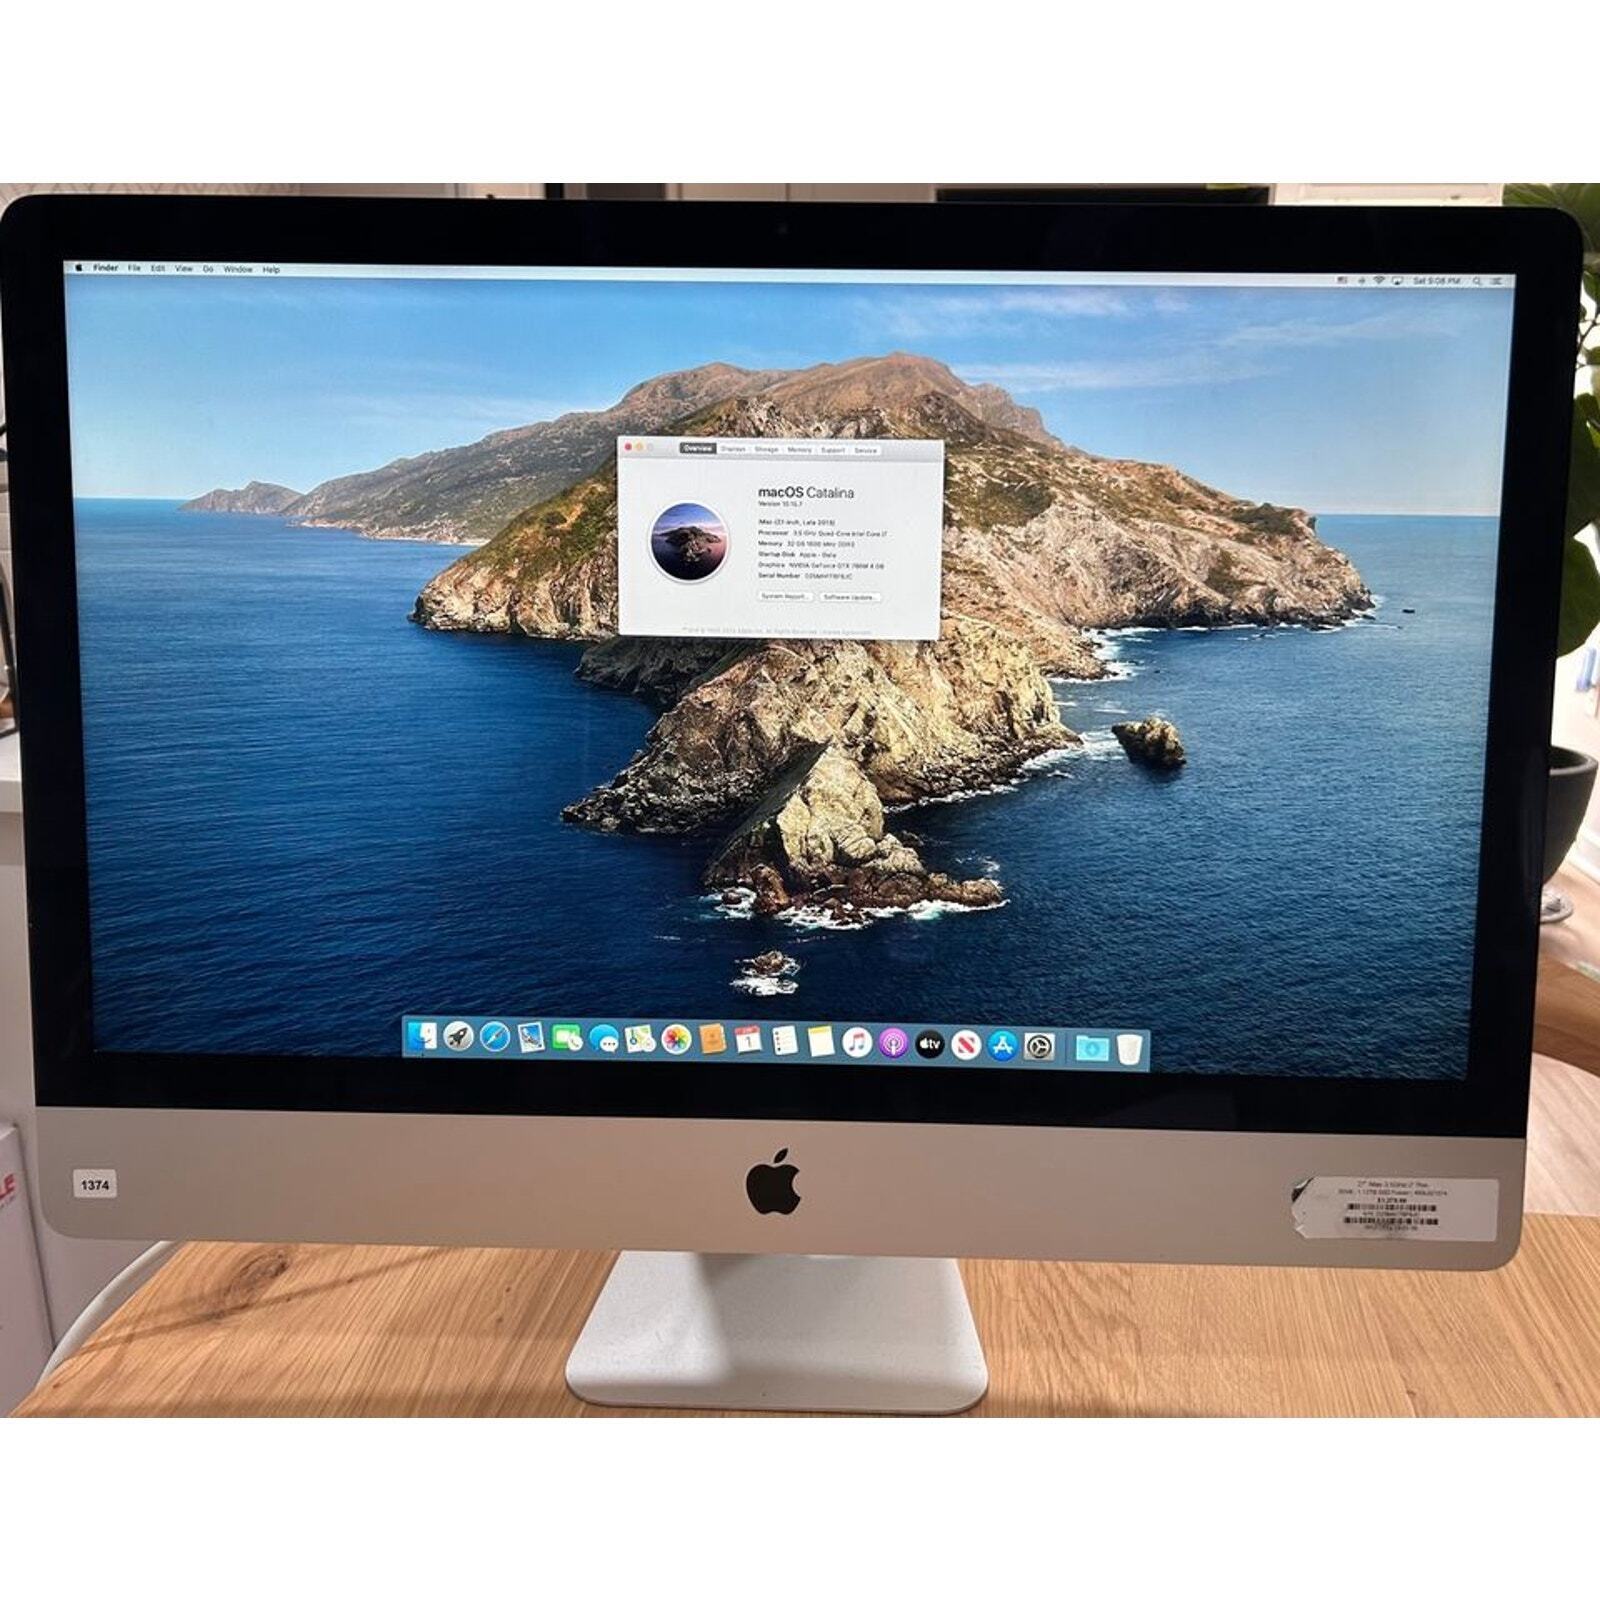 Sleek All-in-One Powerhouse Apple iMac 27 inch Desktop